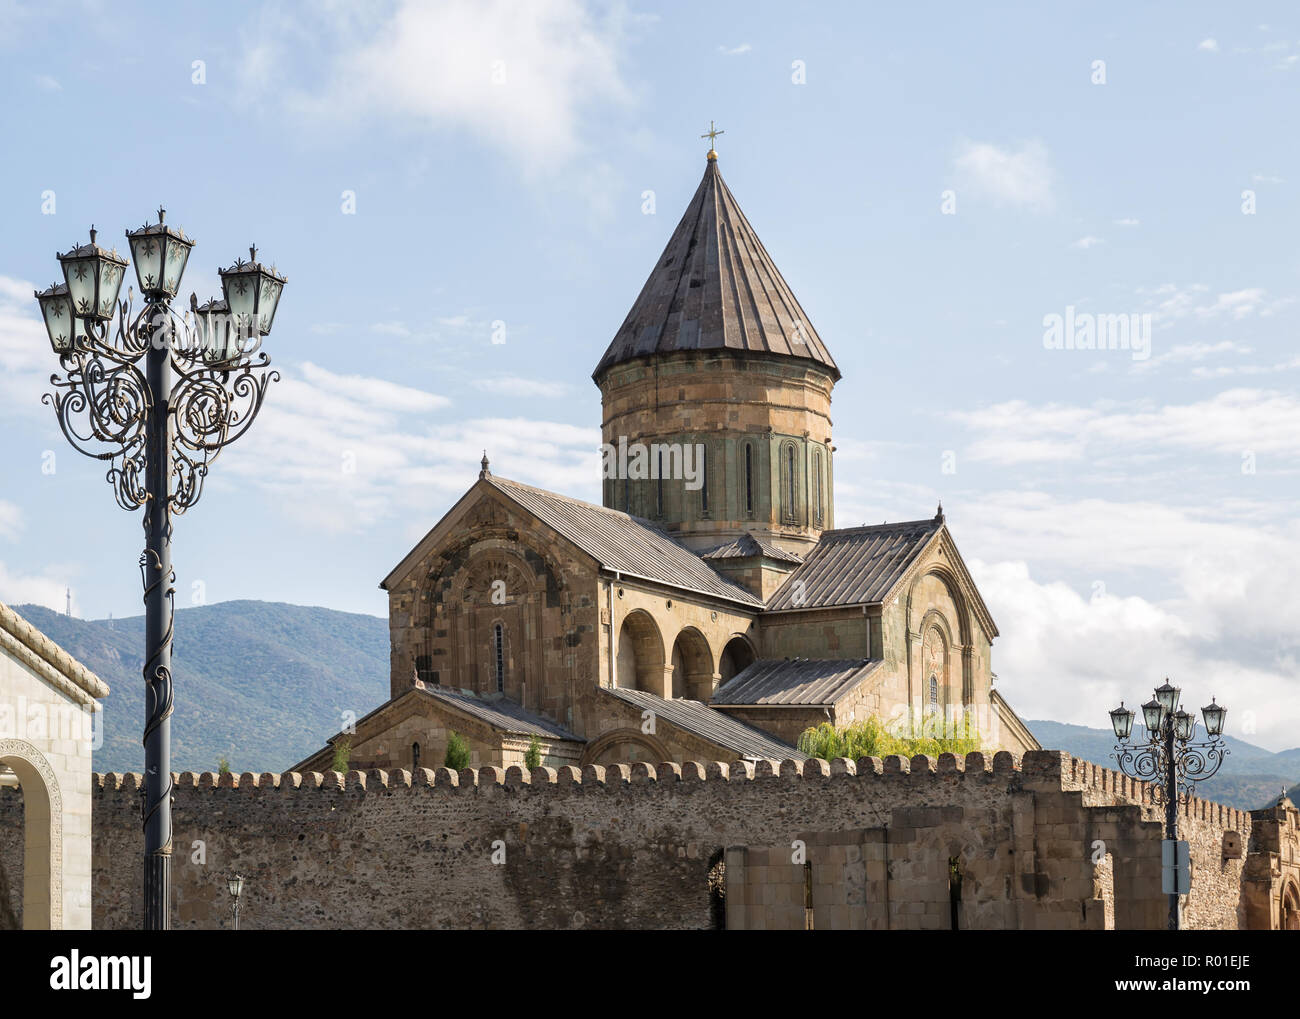 La cathédrale de Svetitskhoveli (site du patrimoine mondial de l'UNESCO), Mtskheta (Géorgie) Banque D'Images